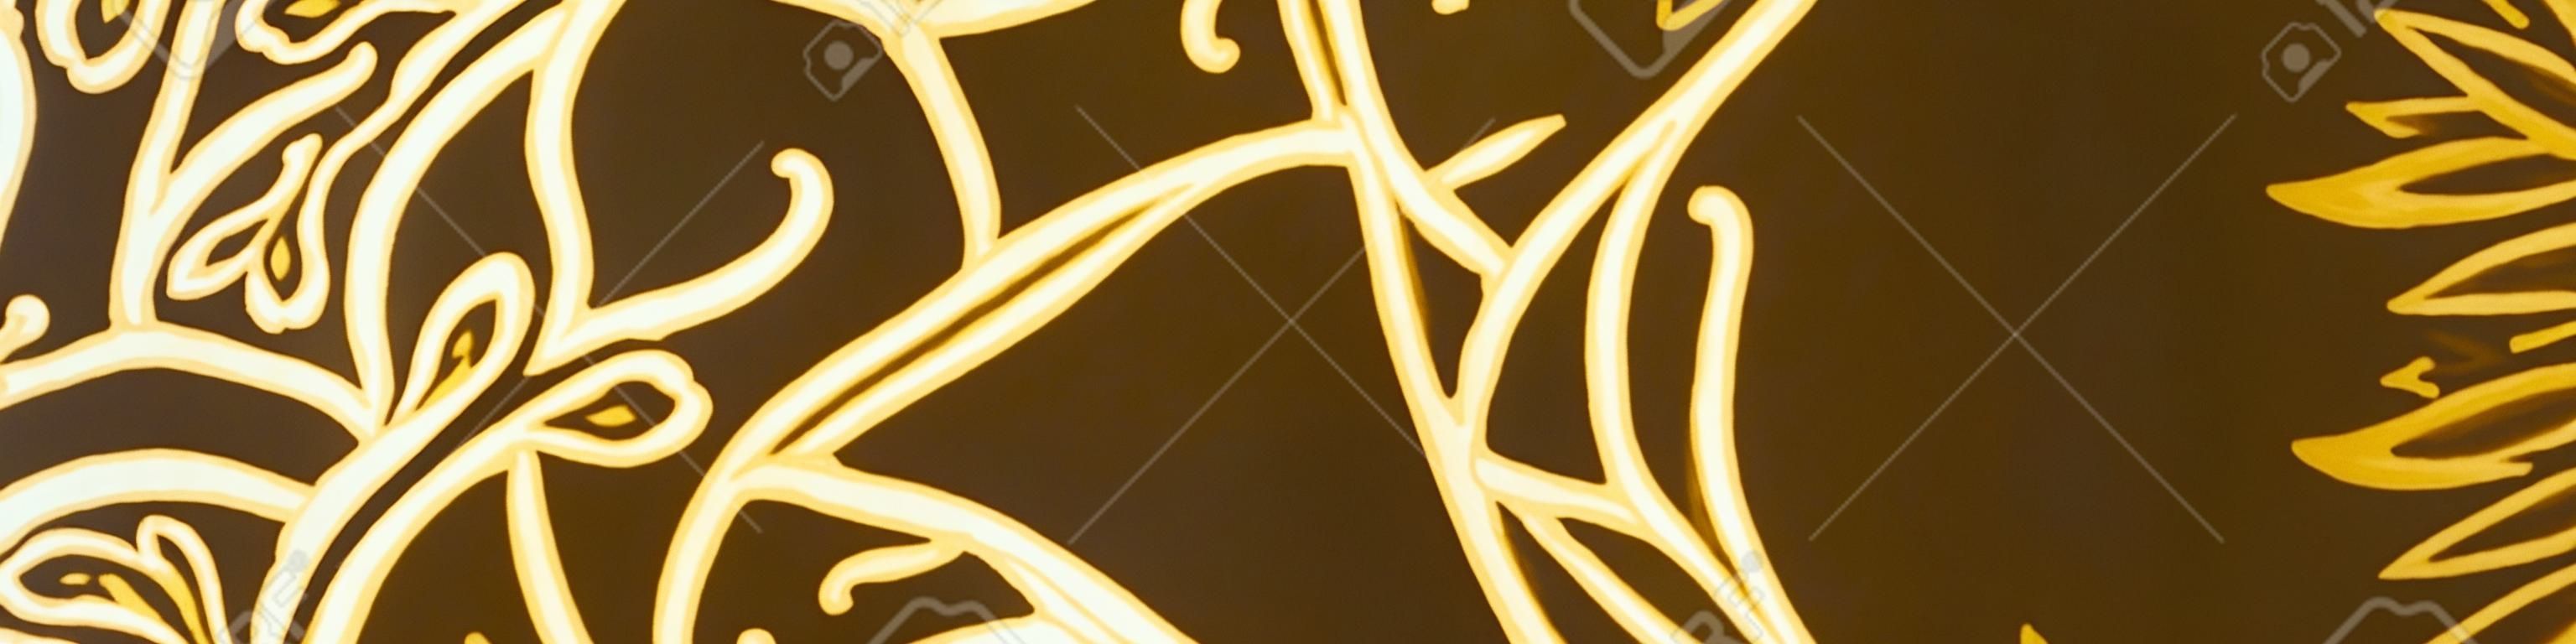 Espanhol Ornamental. Medalhão Persa de Luxo. Natal Malásia Batik. Ornamento Barroco. Impressão Tradicional Brilhante. Batik Wallpaper. Ornamento de Portugal Brilhante.